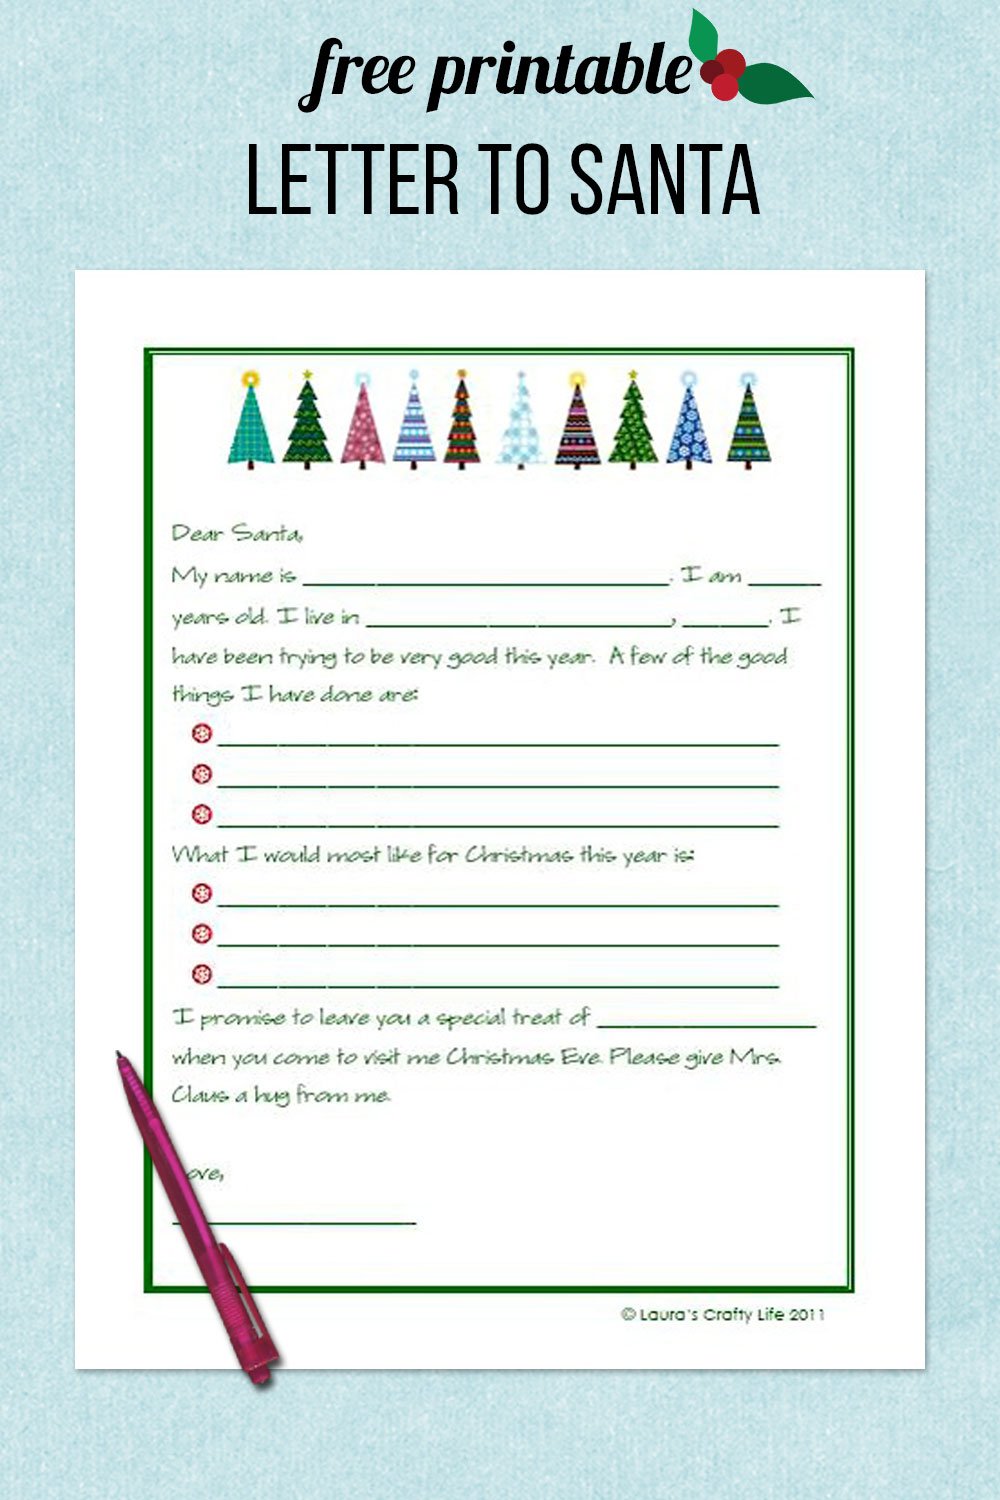 free printable letter to santa